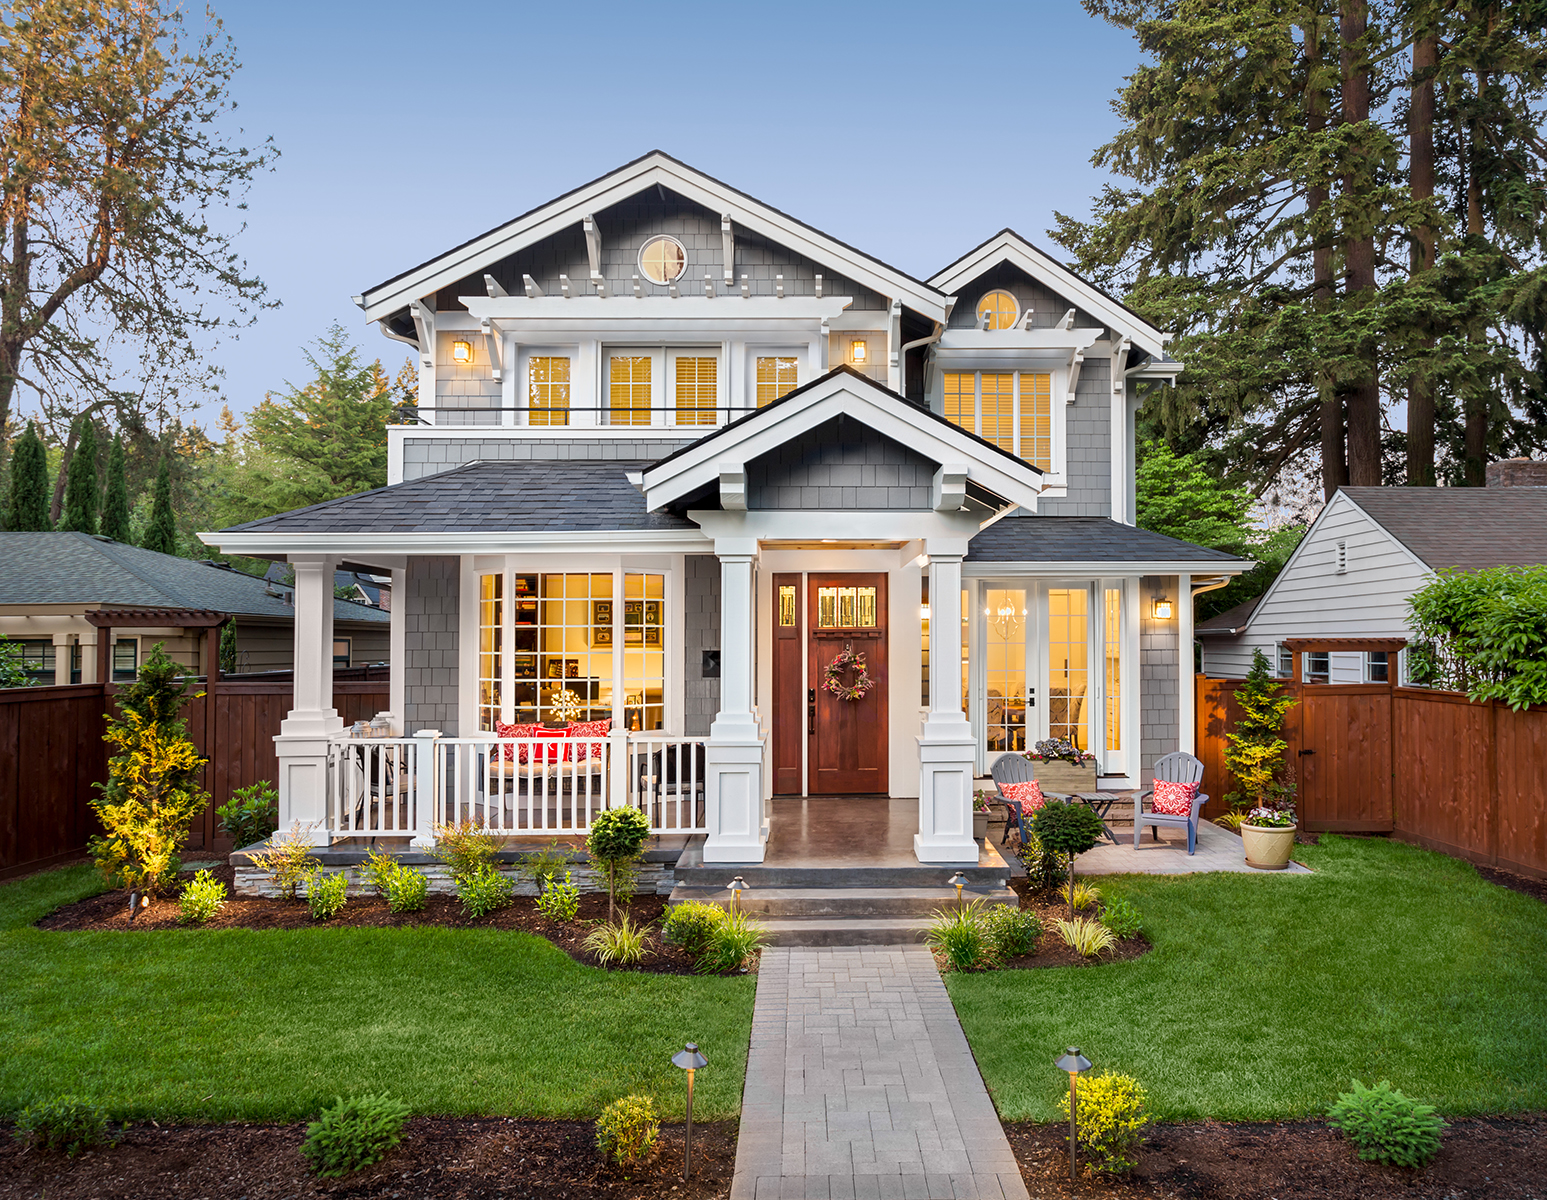 Giá bán trung bình của một căn nhà ở Mỹ được tính dựa trên diện tích như thế nào?
